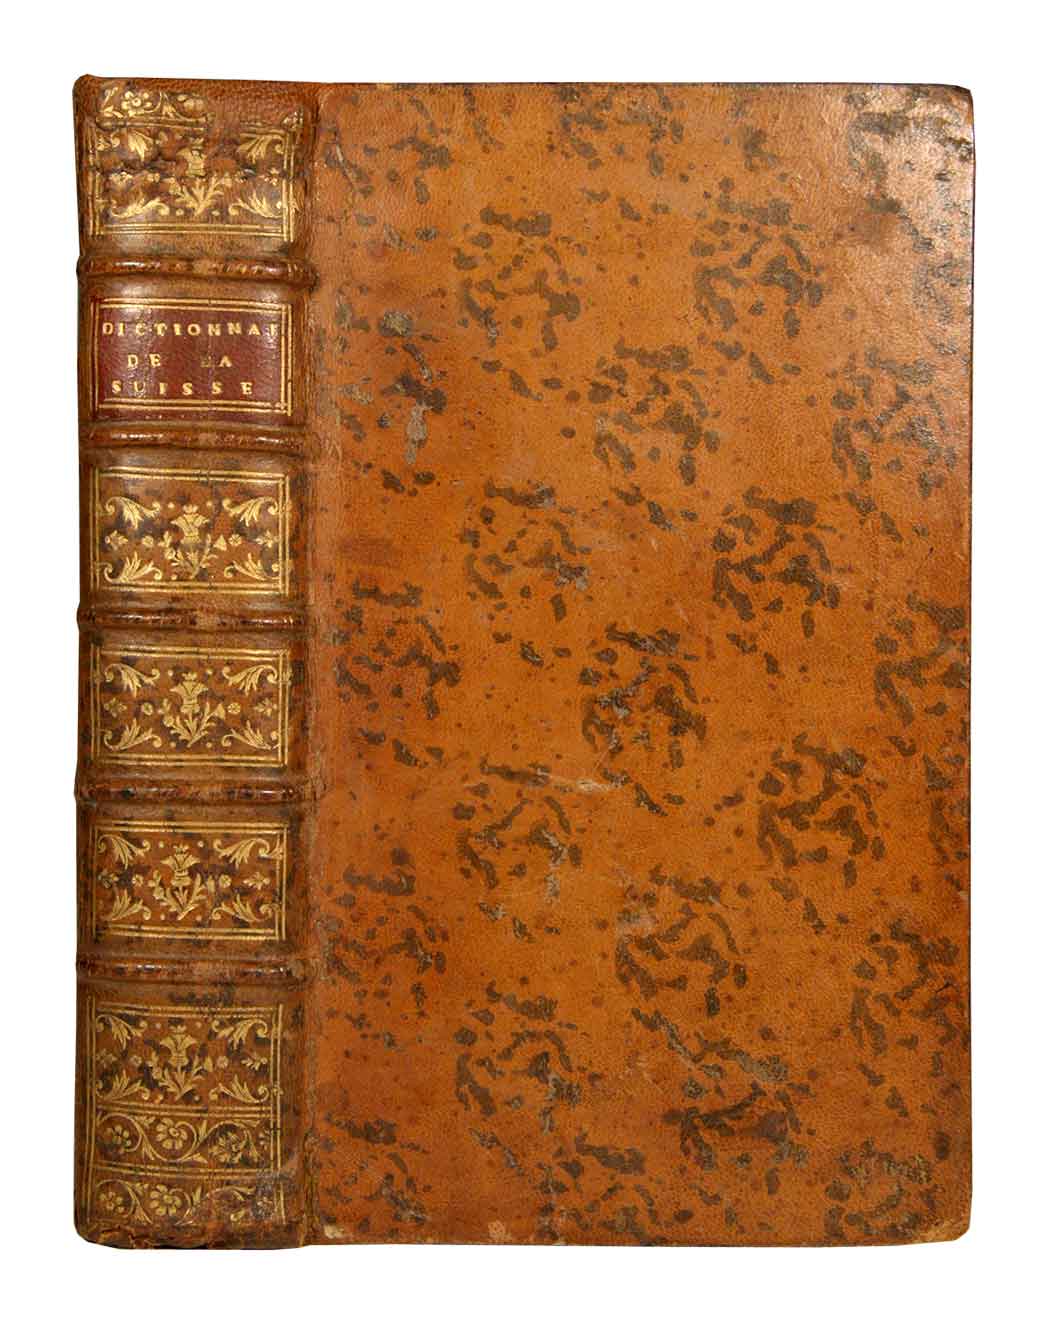 TSCHARNER, Vincent Bernard: - Dictionnaire gographique, historique et politique de la Suisse. 2 tomes (I : A - LUC. / II : LUGANO - Z). Relis en 1 volume.